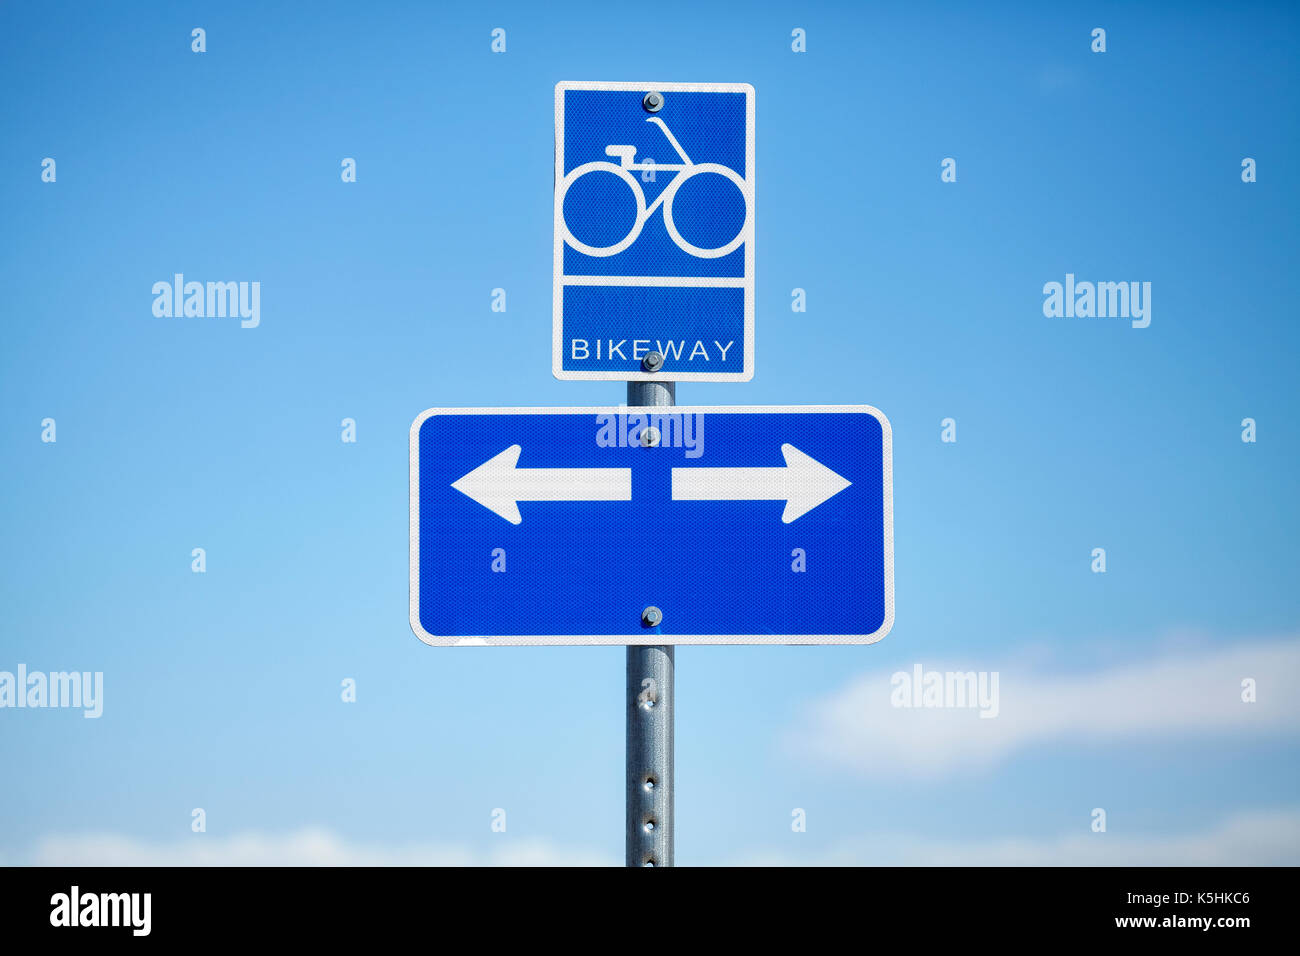 Bikeway cartello stradale contro il cielo blu, il concetto di scelta. Foto Stock